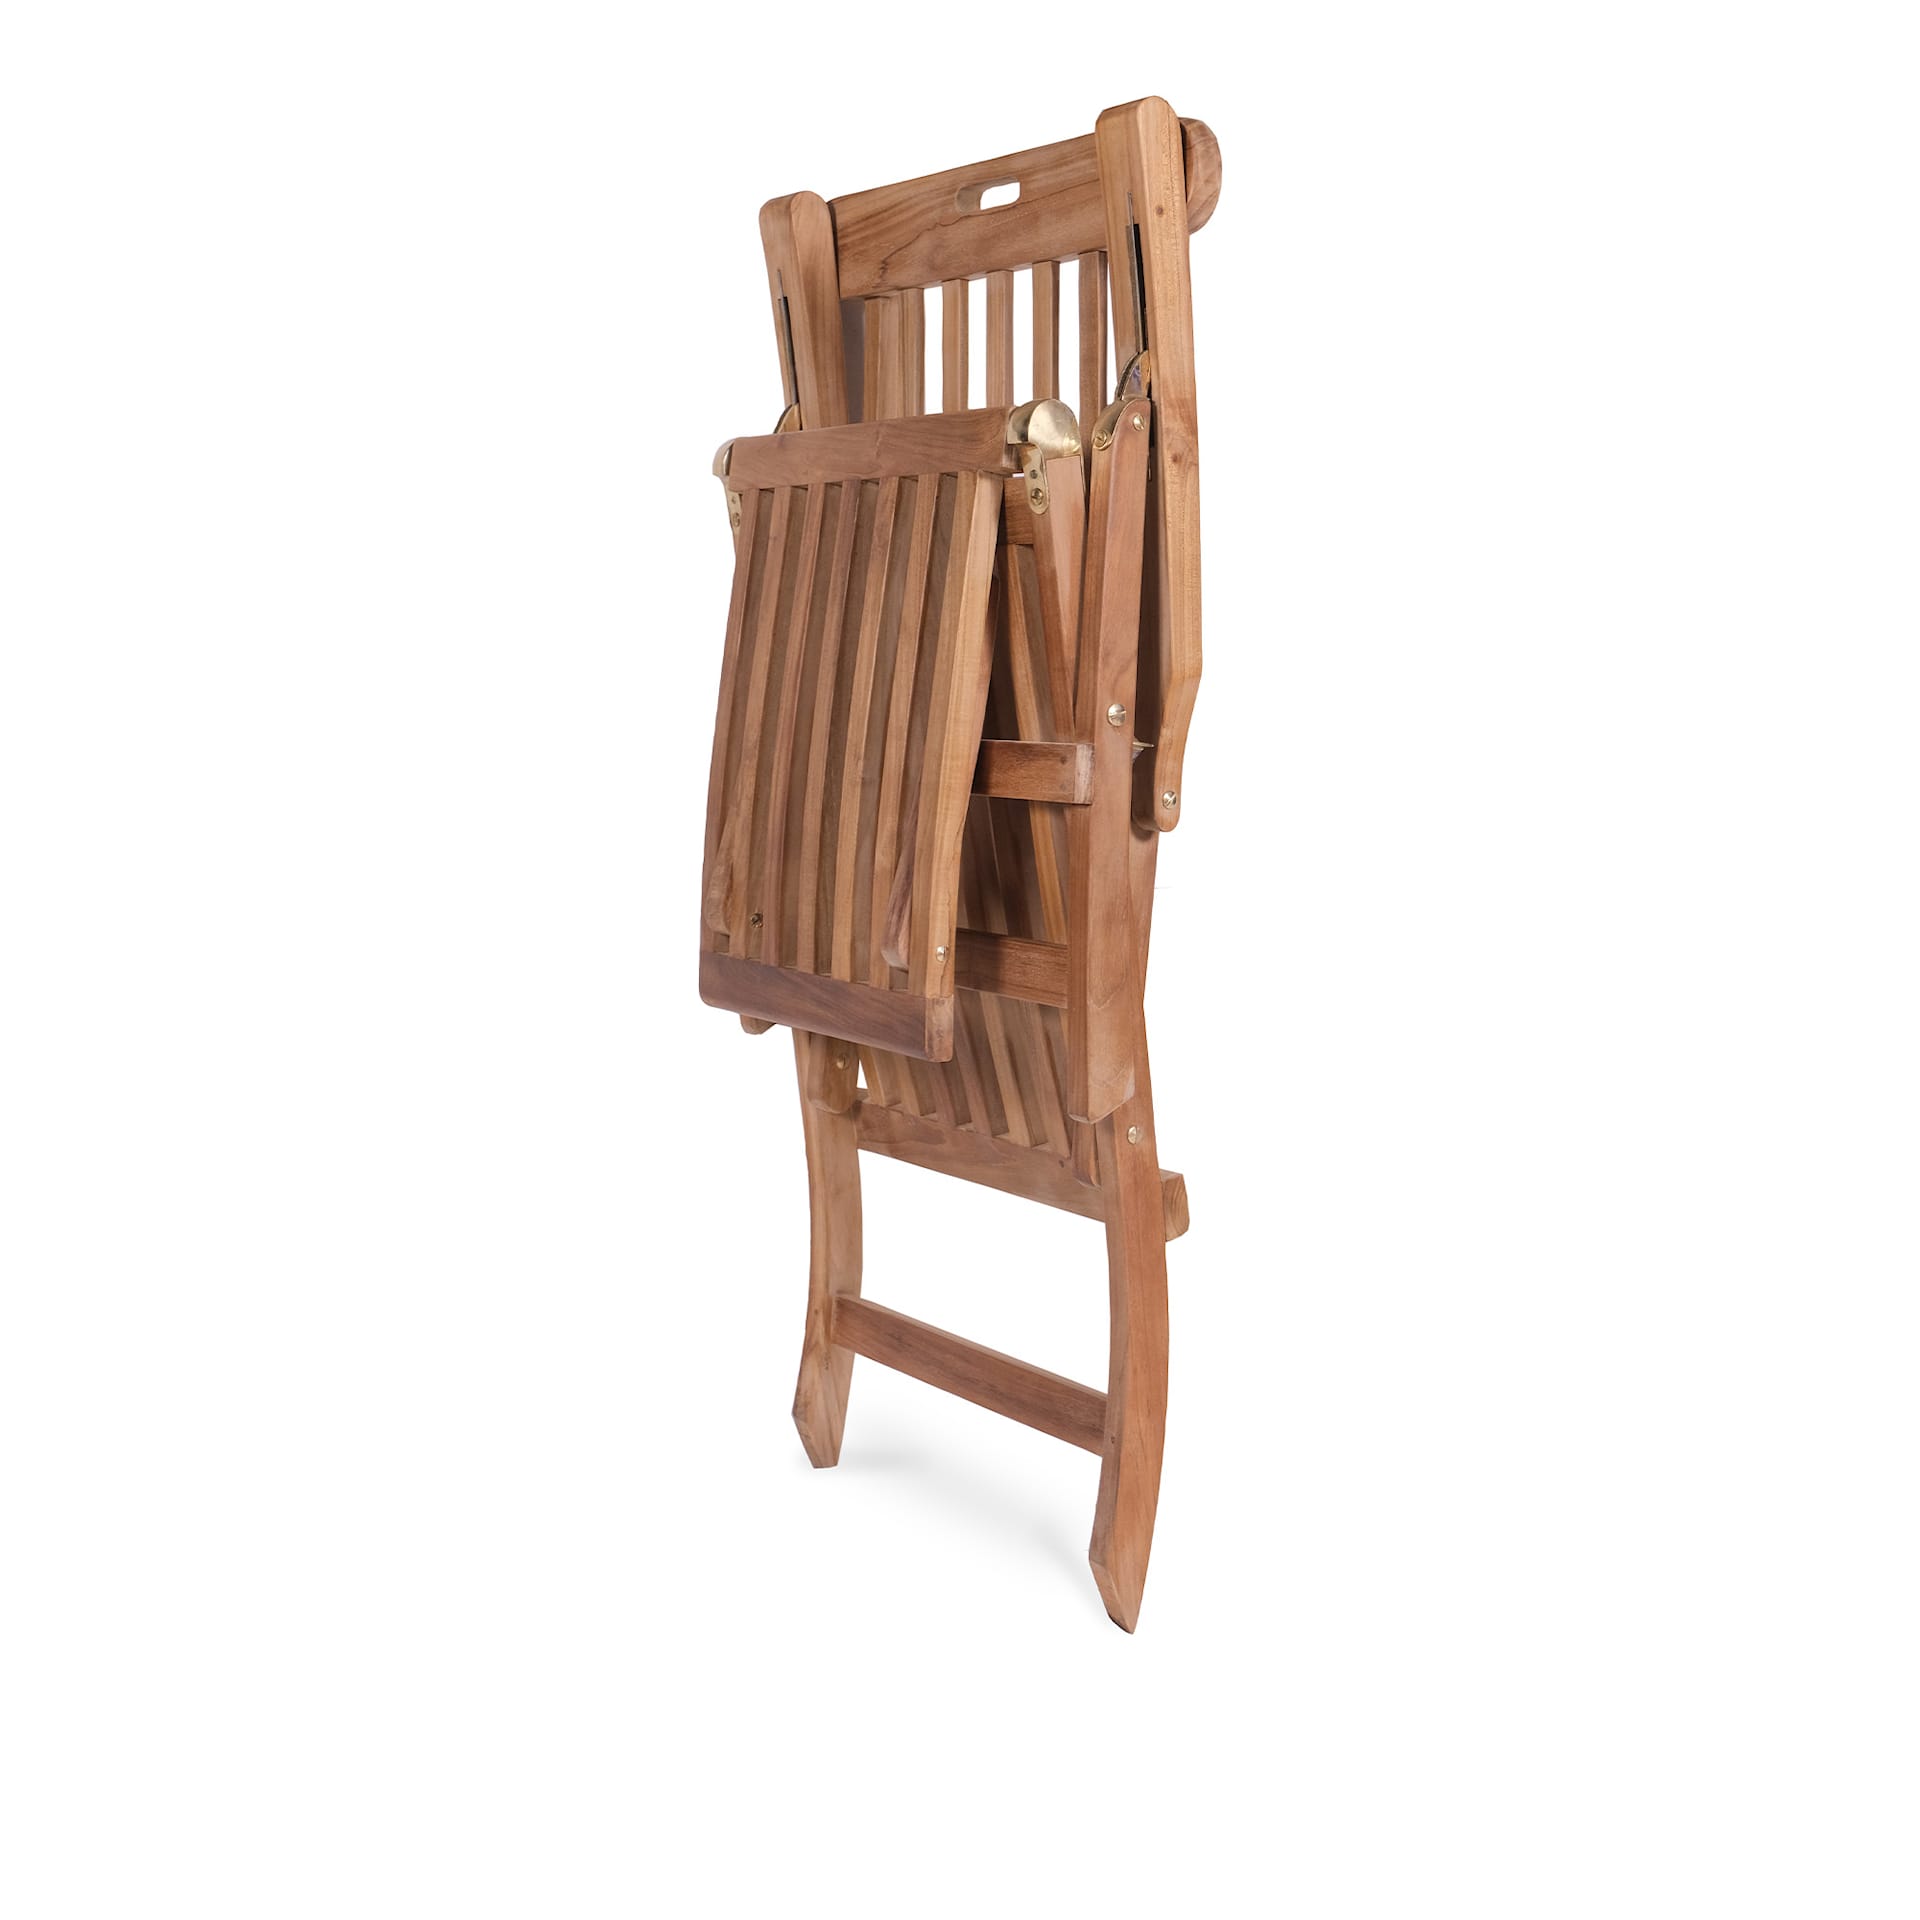 Midsummer Deck Chair - A. Huseby - NO GA